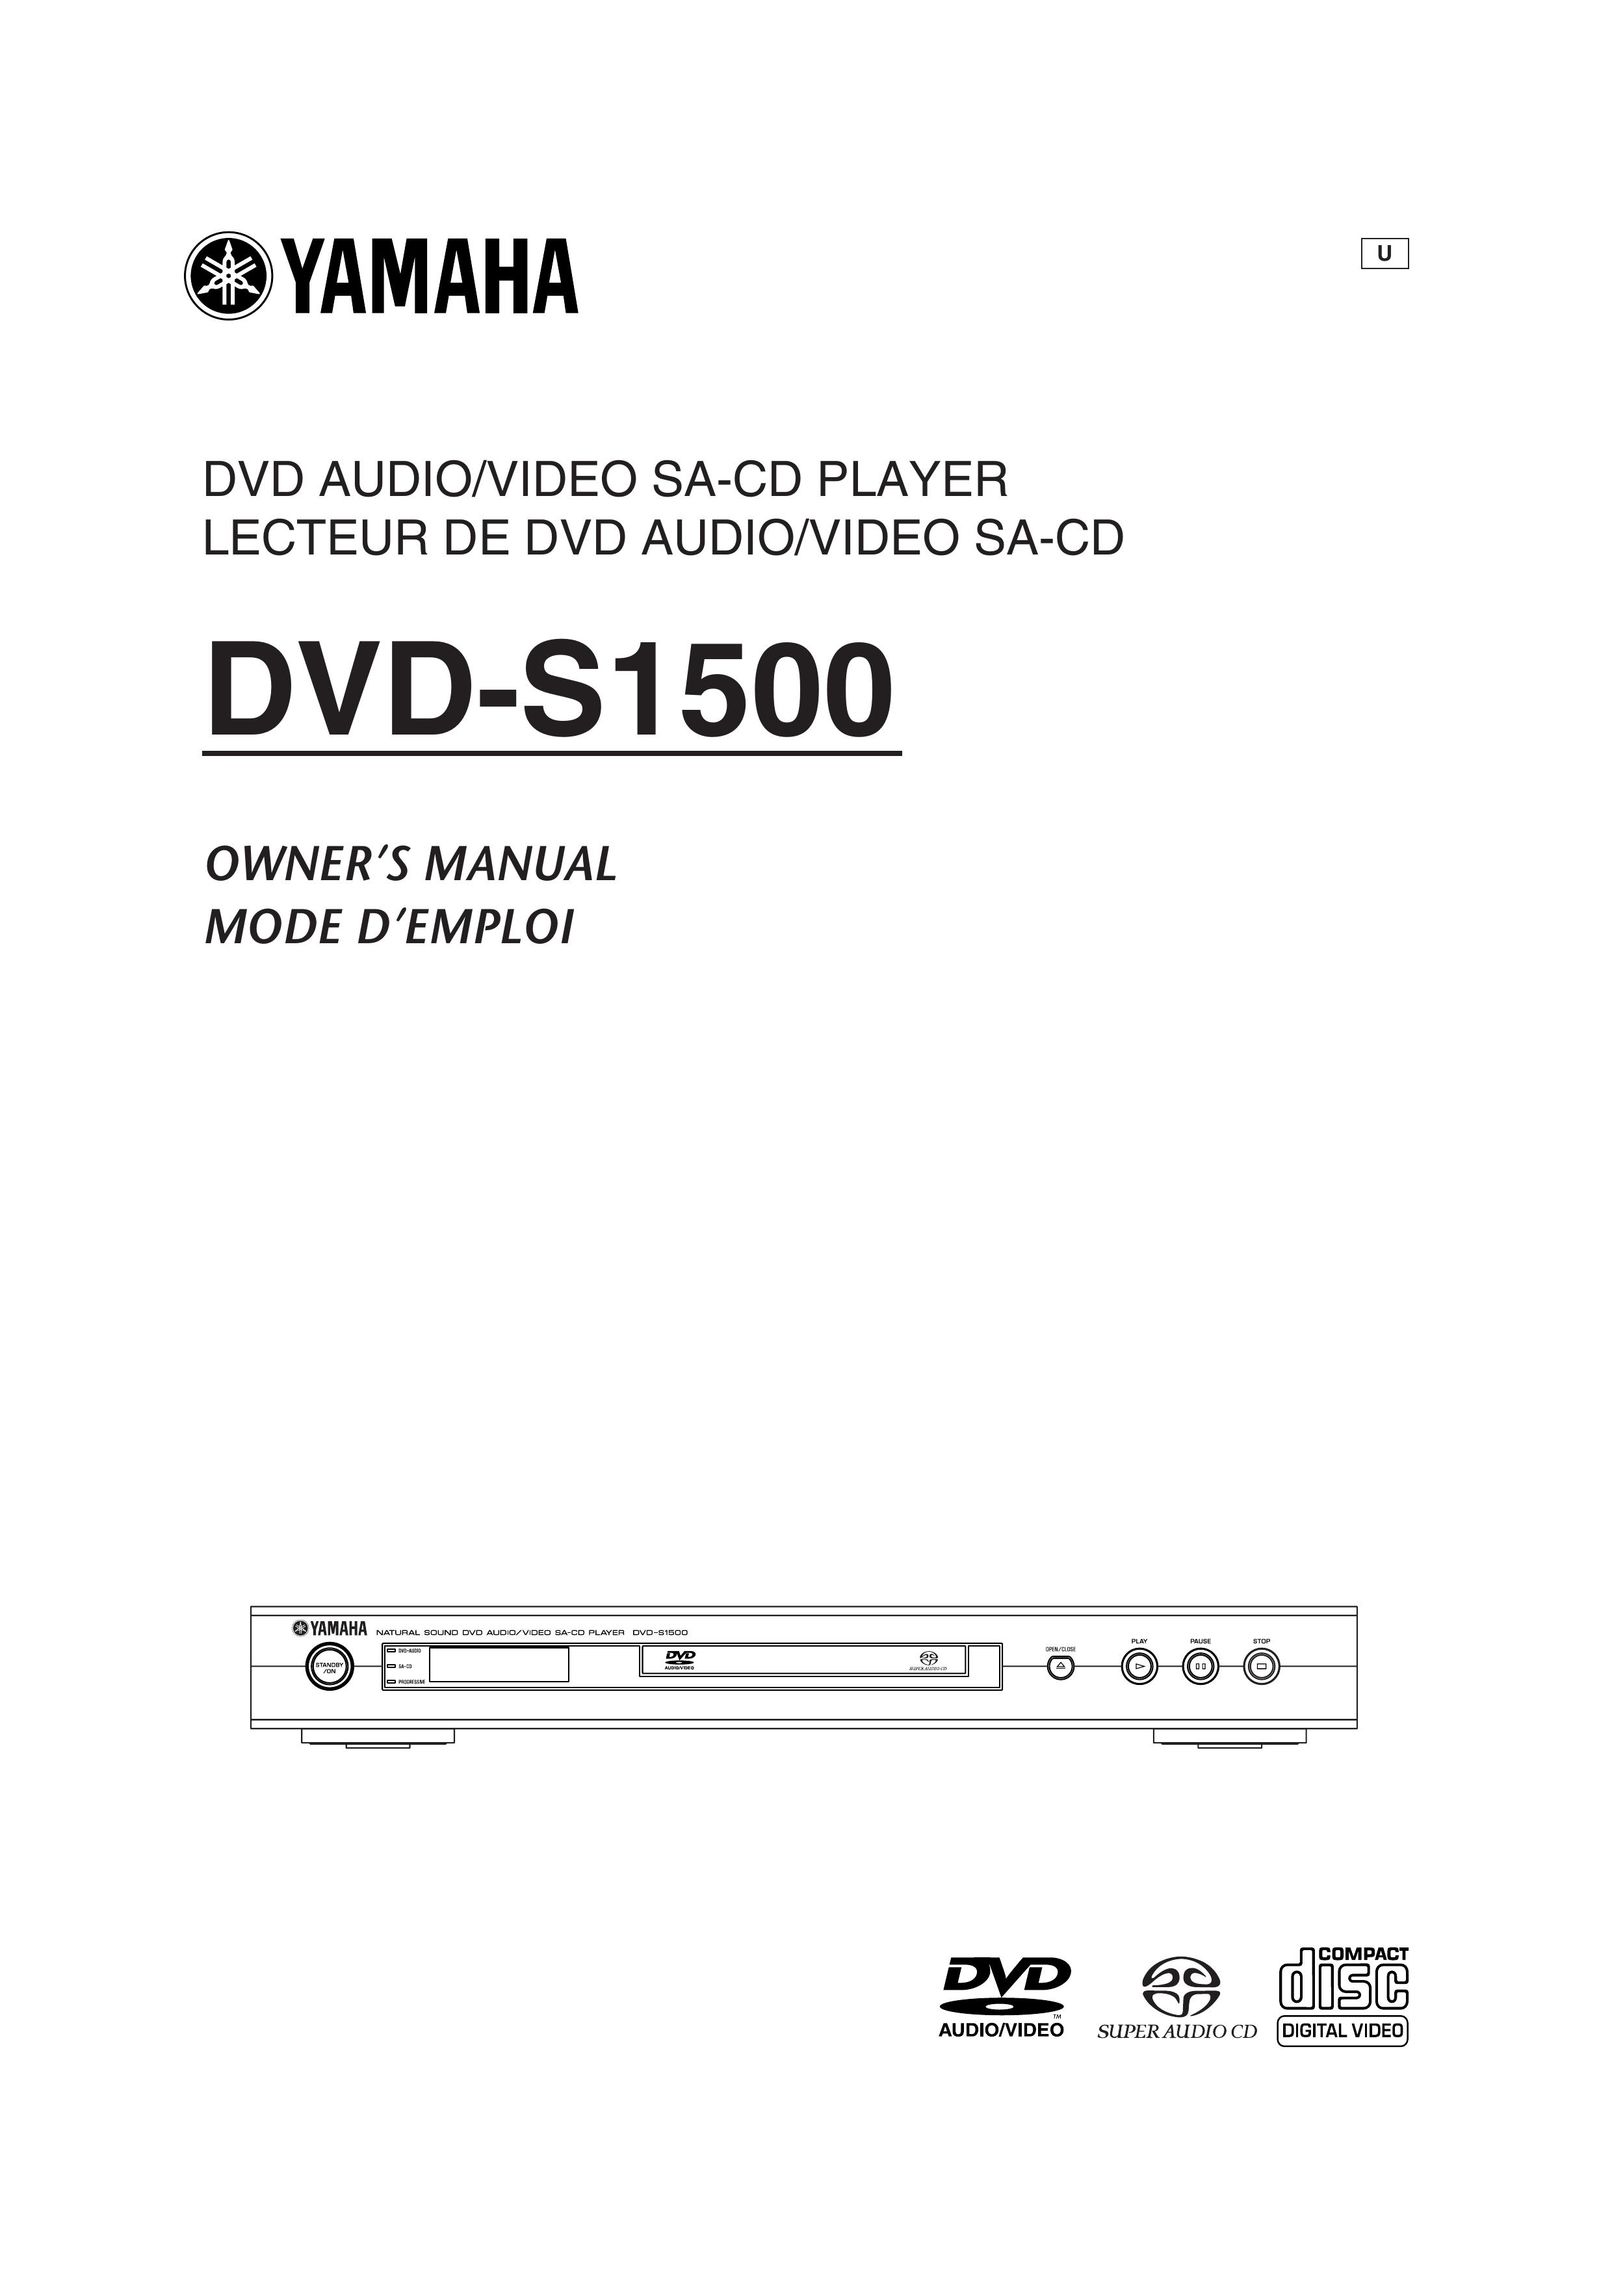 Yamaha DVD-S1500 DVD Player User Manual